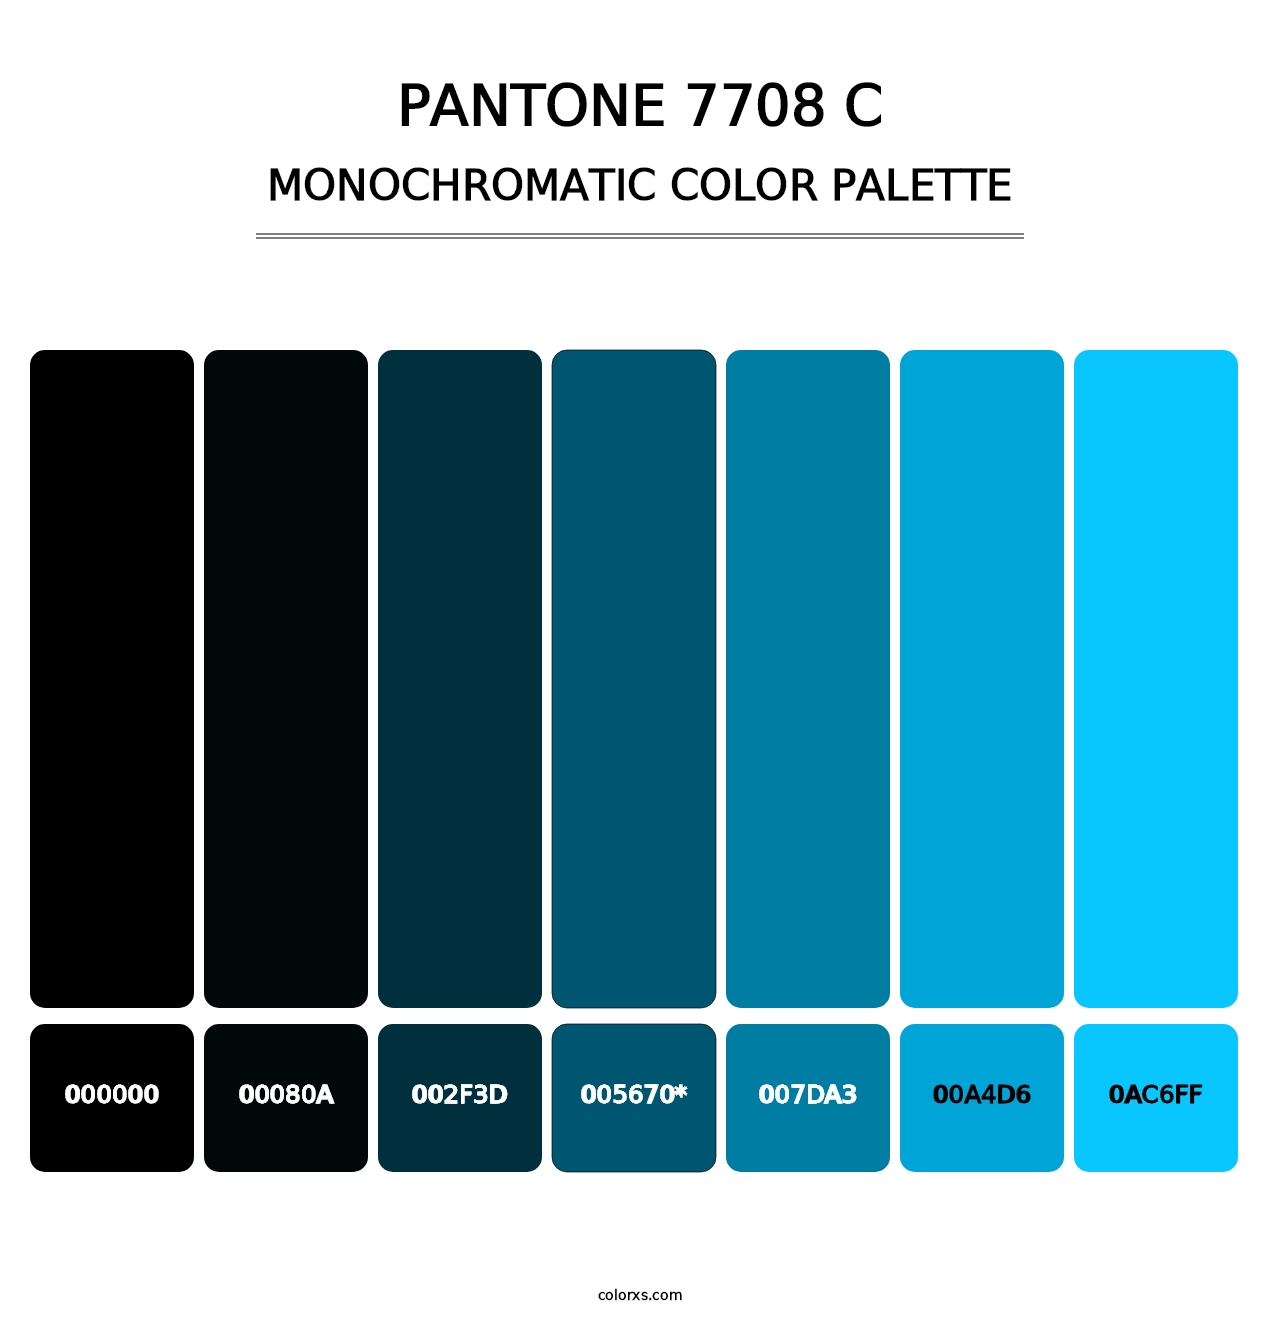 PANTONE 7708 C - Monochromatic Color Palette